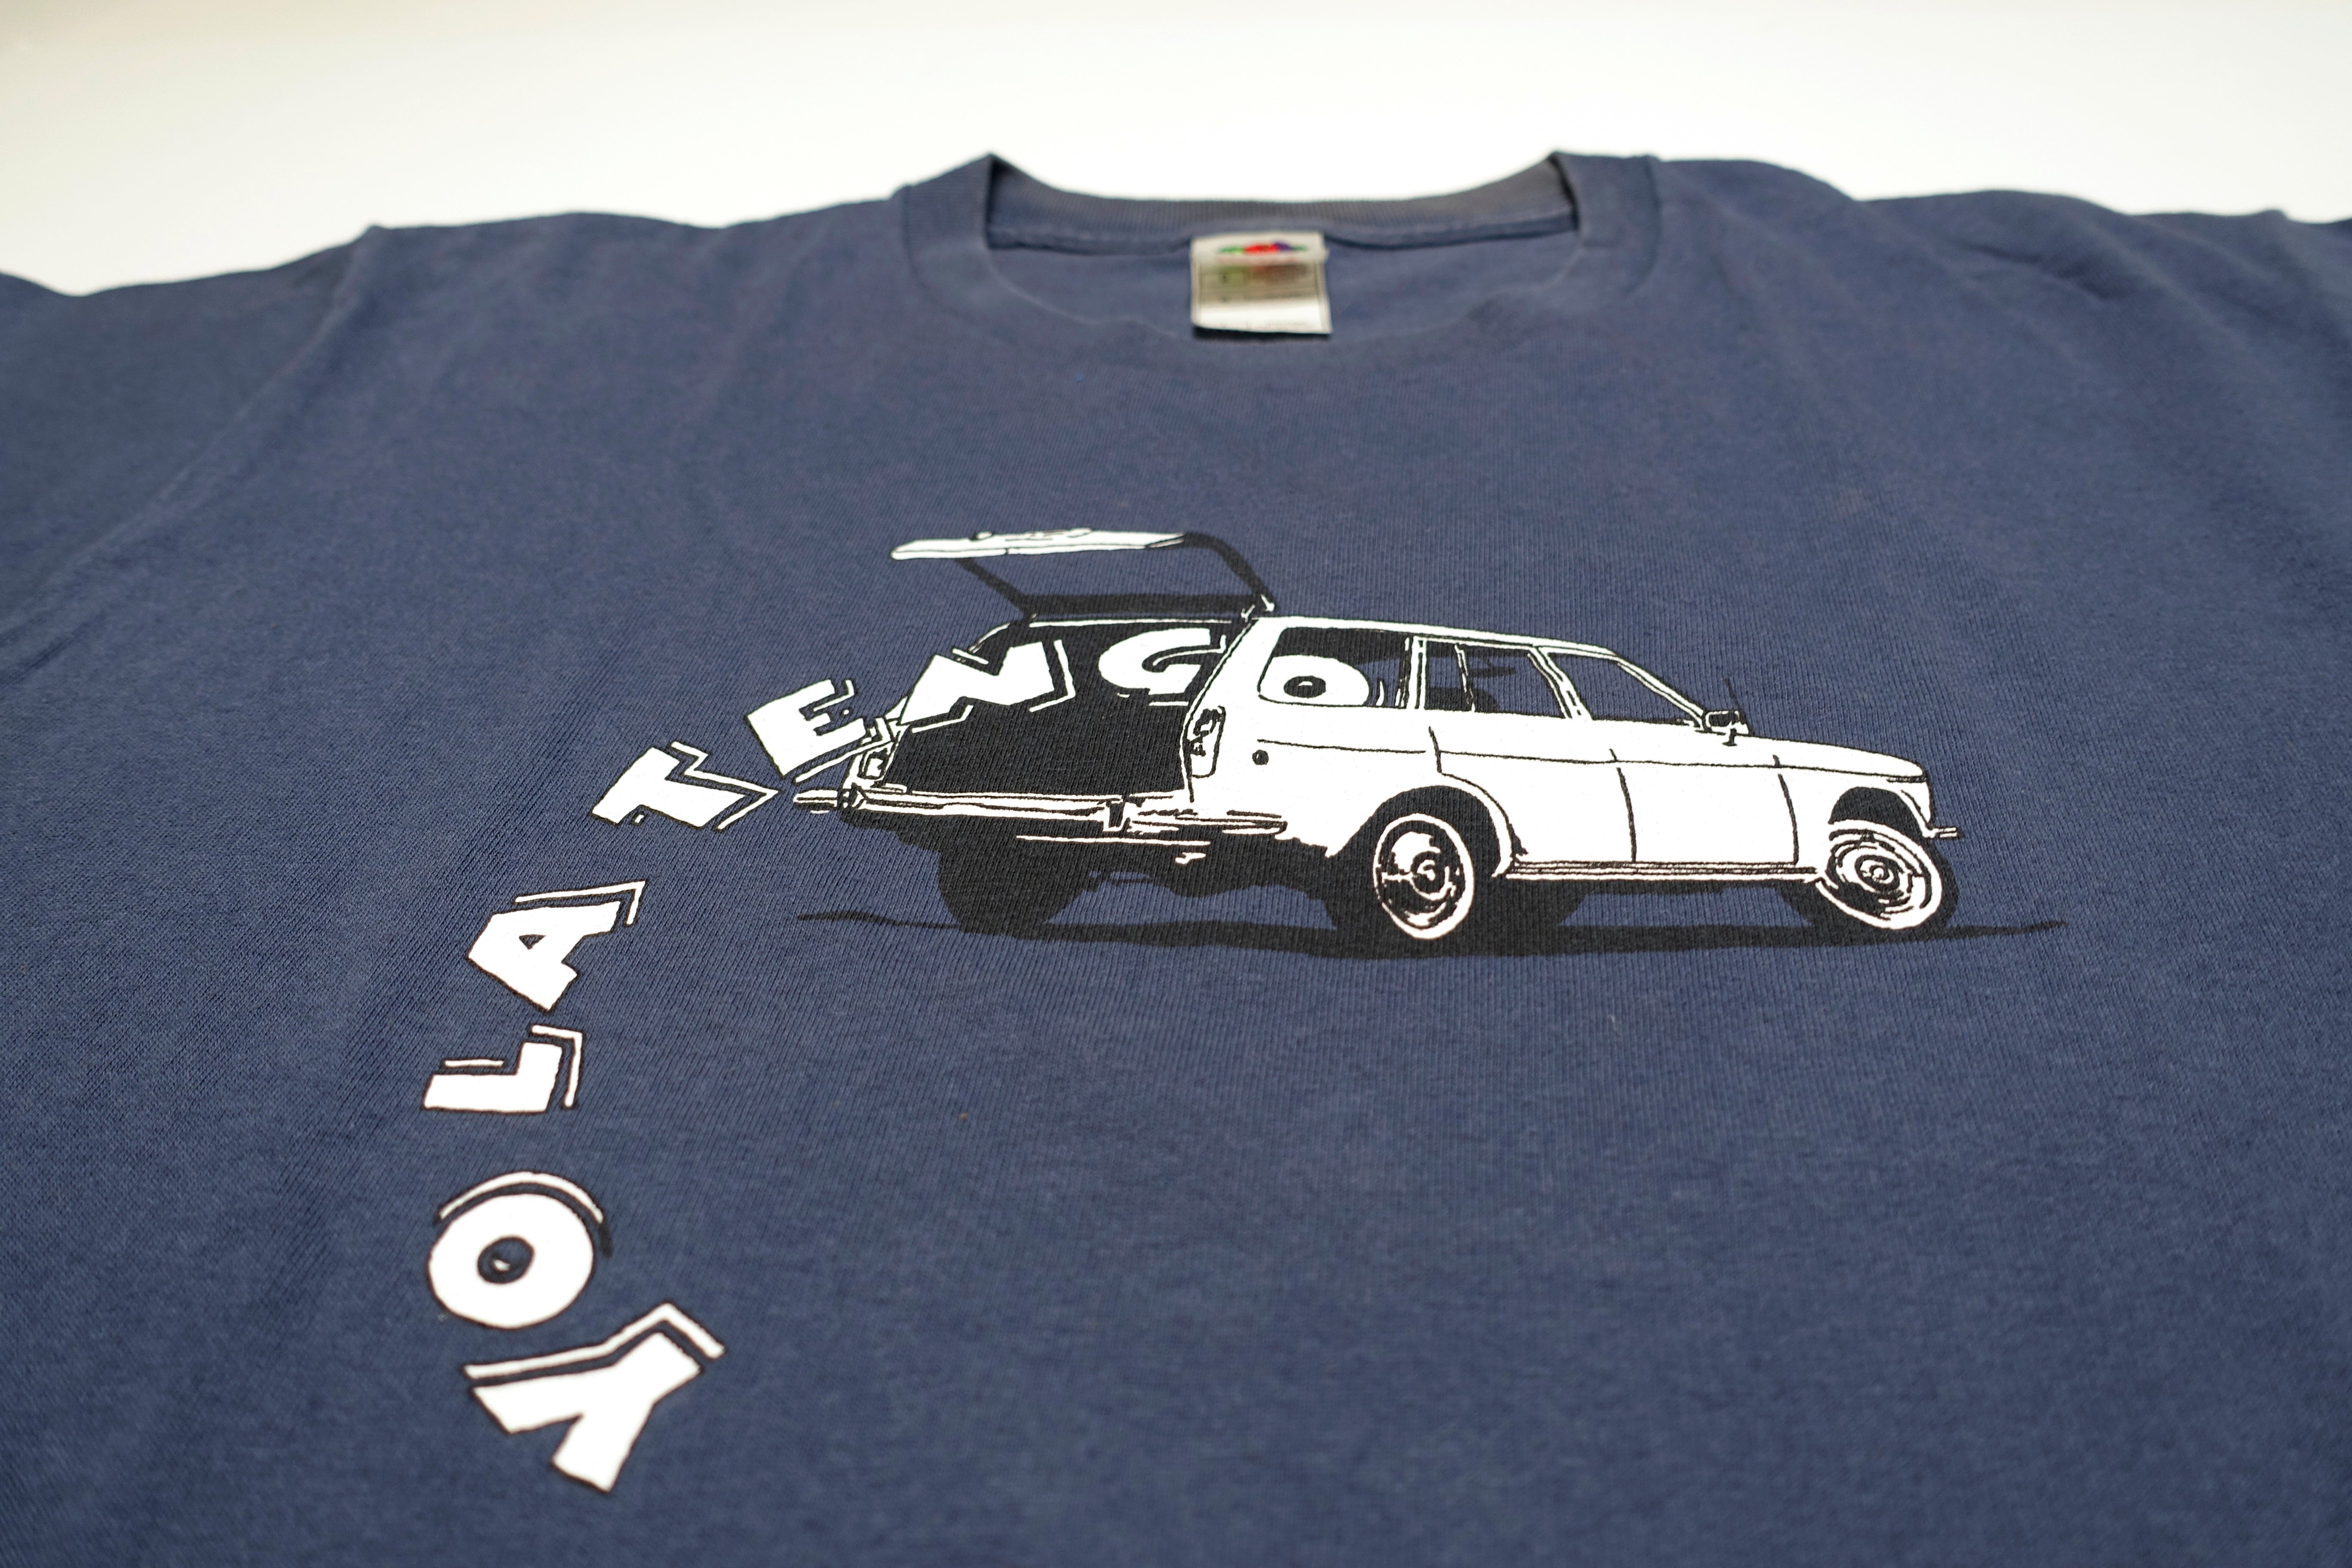 Yo La Tengo ‎– Station Wagon Hatchback 90's Tour Shirt Size Large